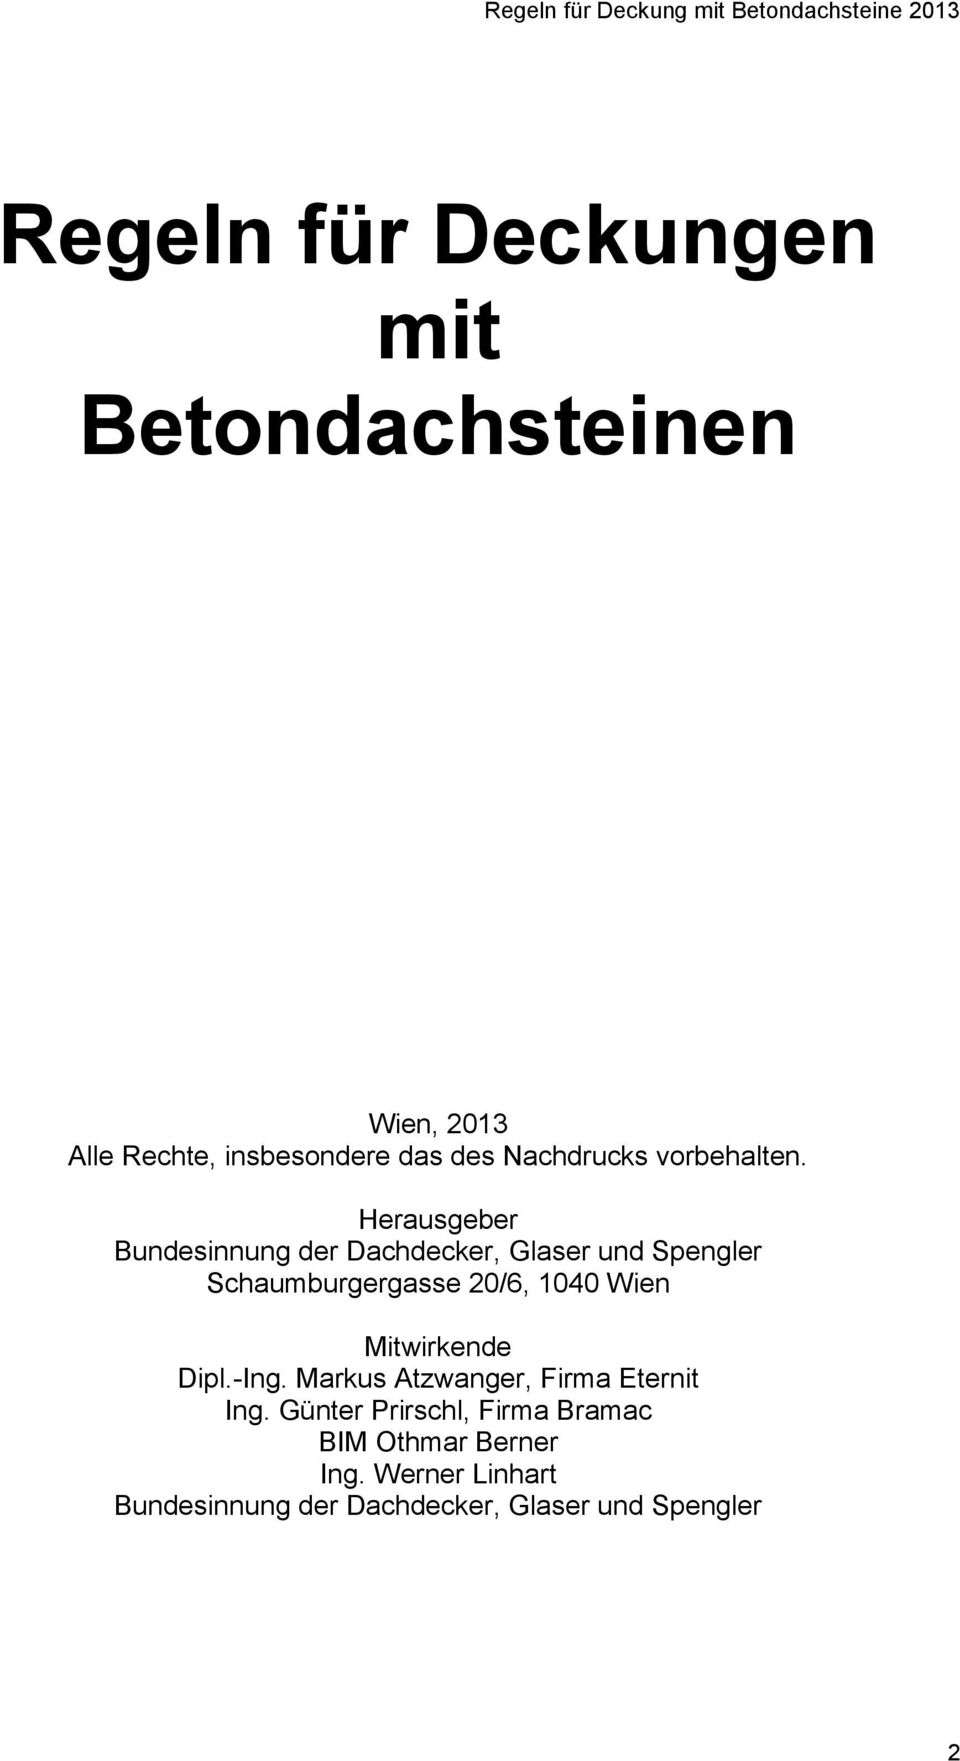 Herausgeber Bundesinnung der Dachdecker, Glaser und Spengler Schaumburgergasse 20/6, 1040 Wien